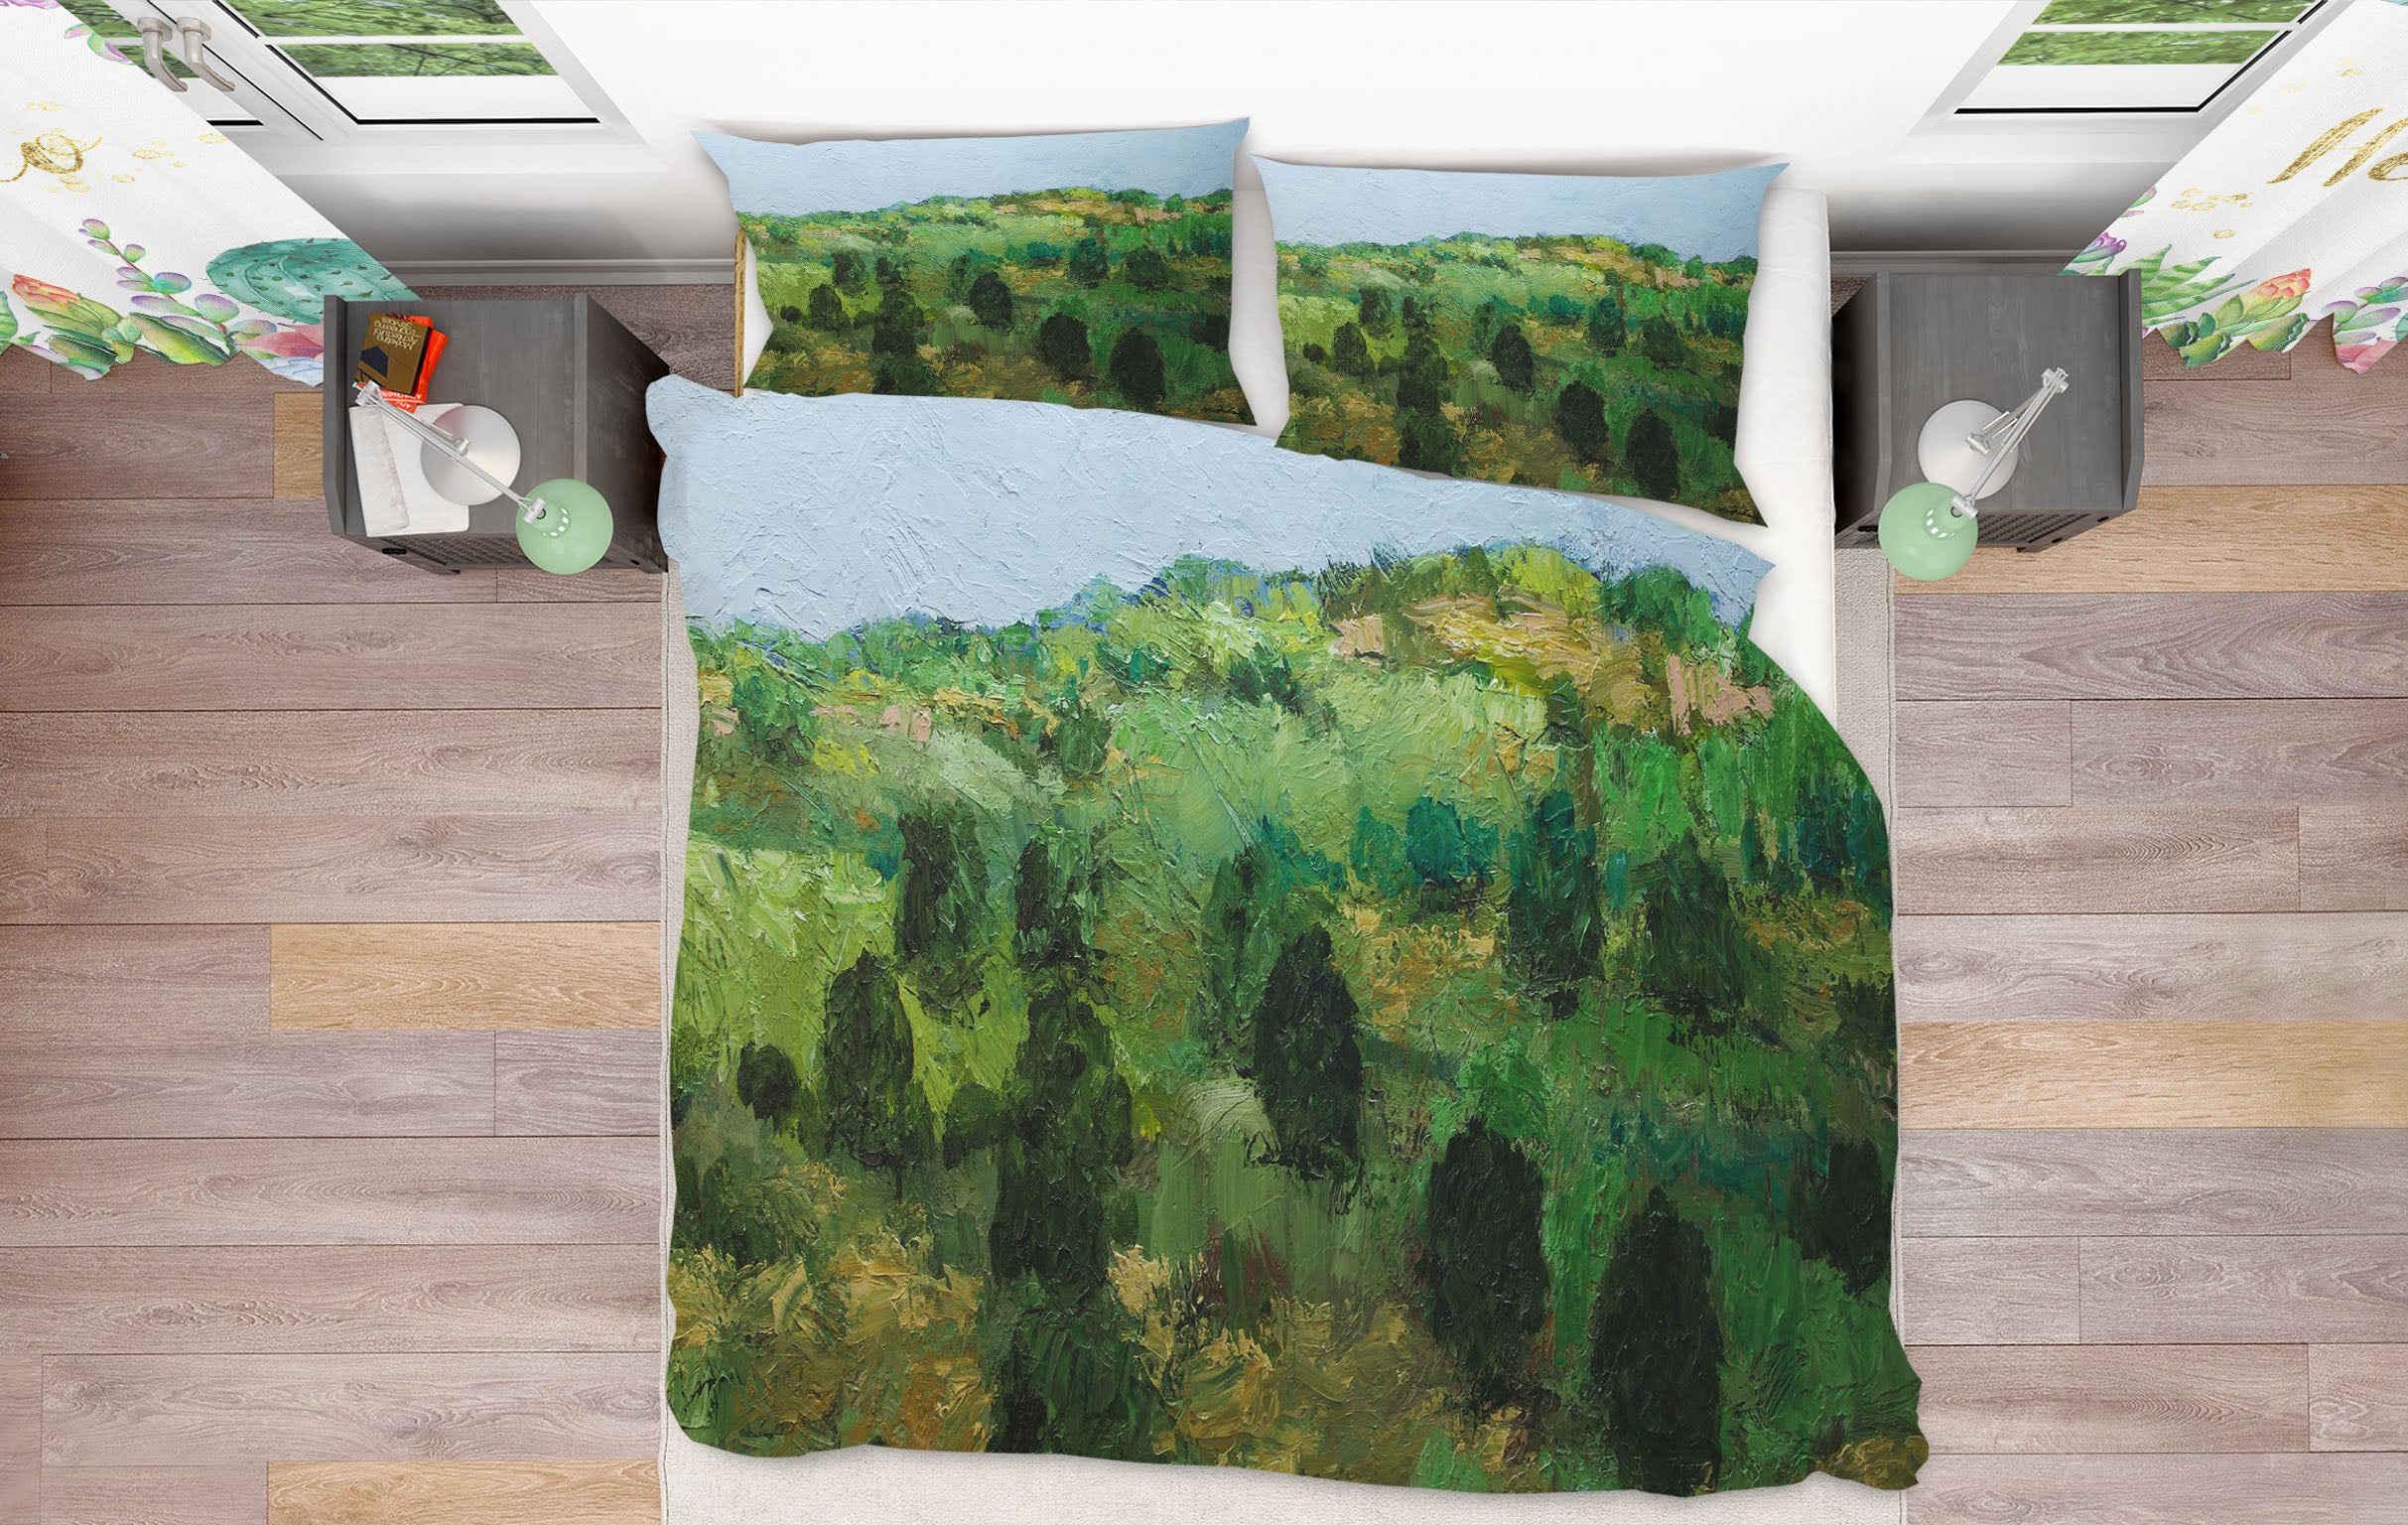 3D Paint Woods 1082 Allan P. Friedlander Bedding Bed Pillowcases Quilt